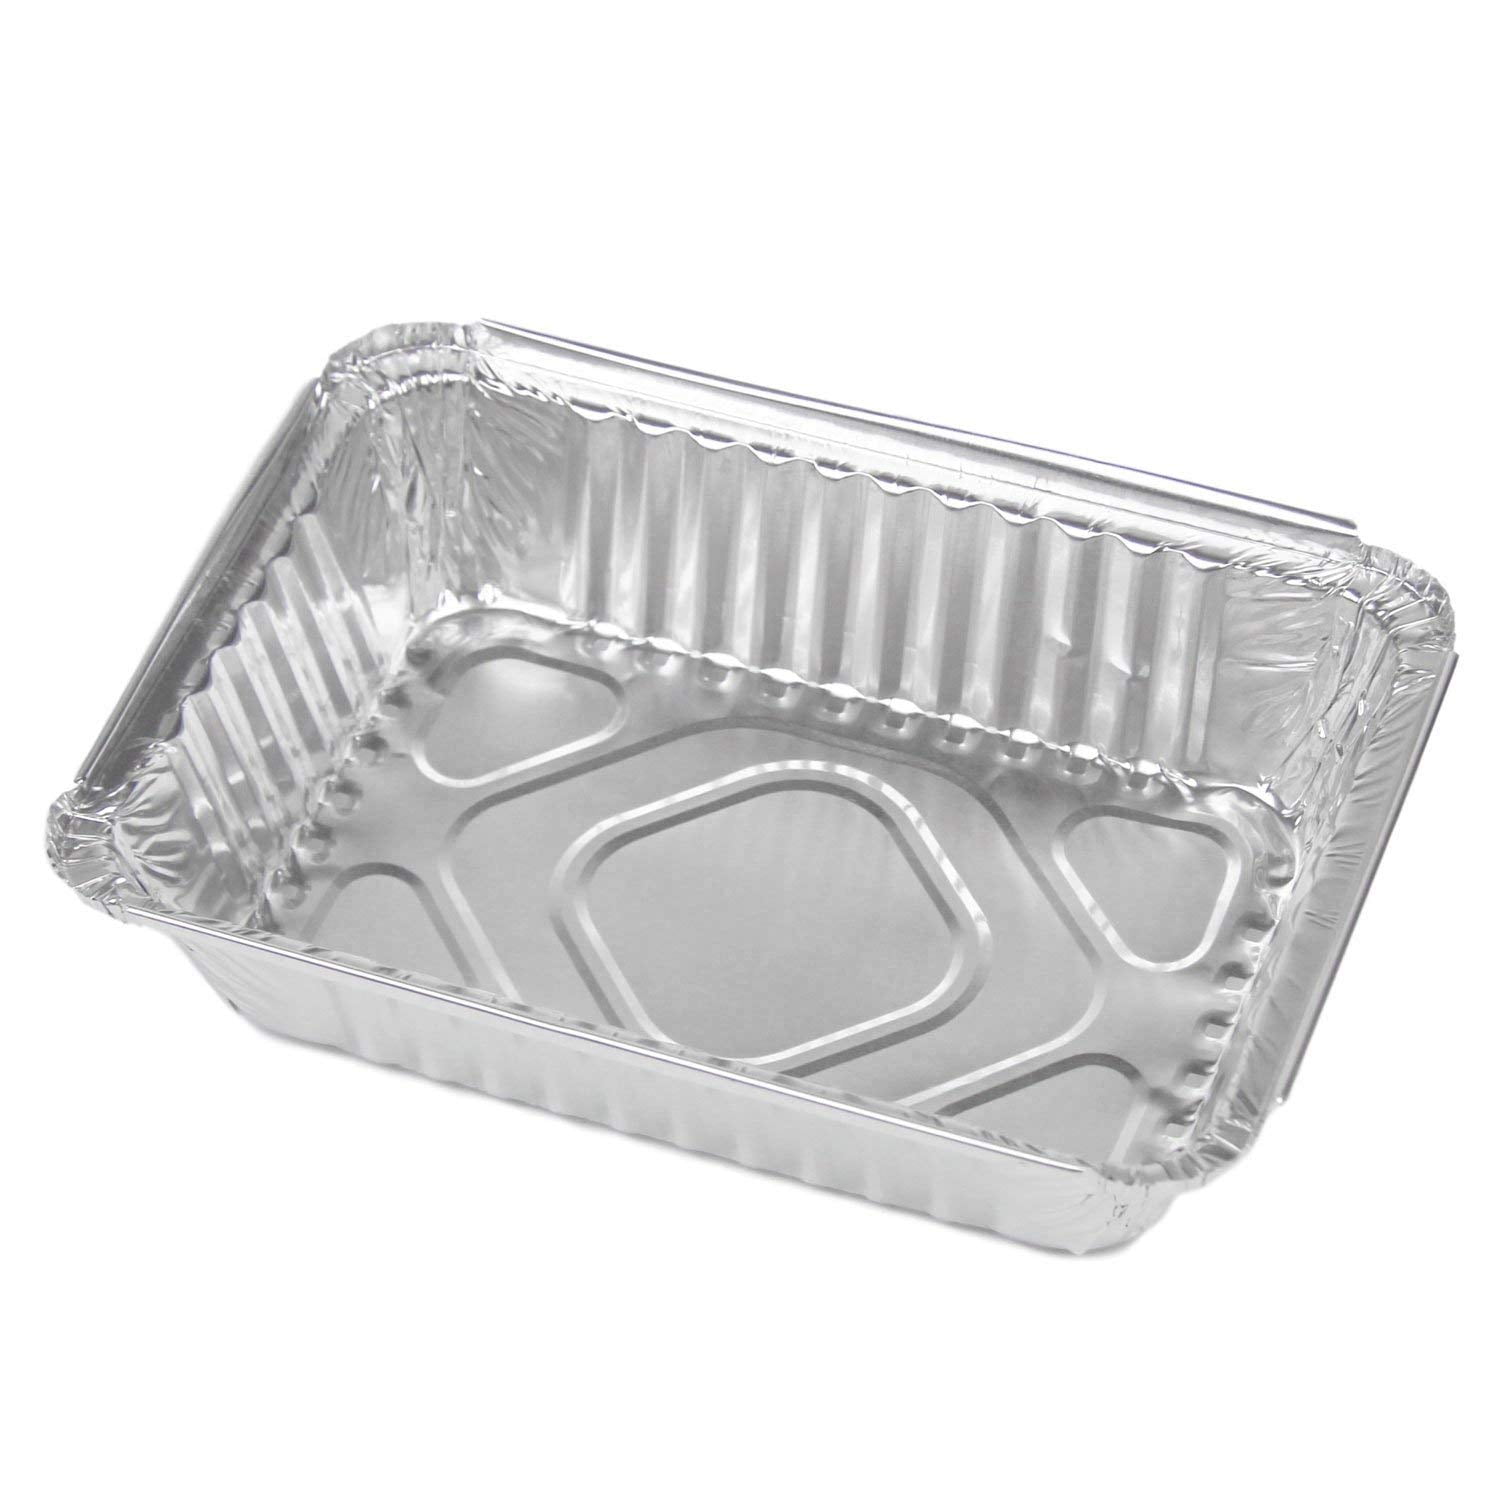 32oz Takeout Foil Pans with Lids, Aluminum Trays (8.26 x 5.7 x